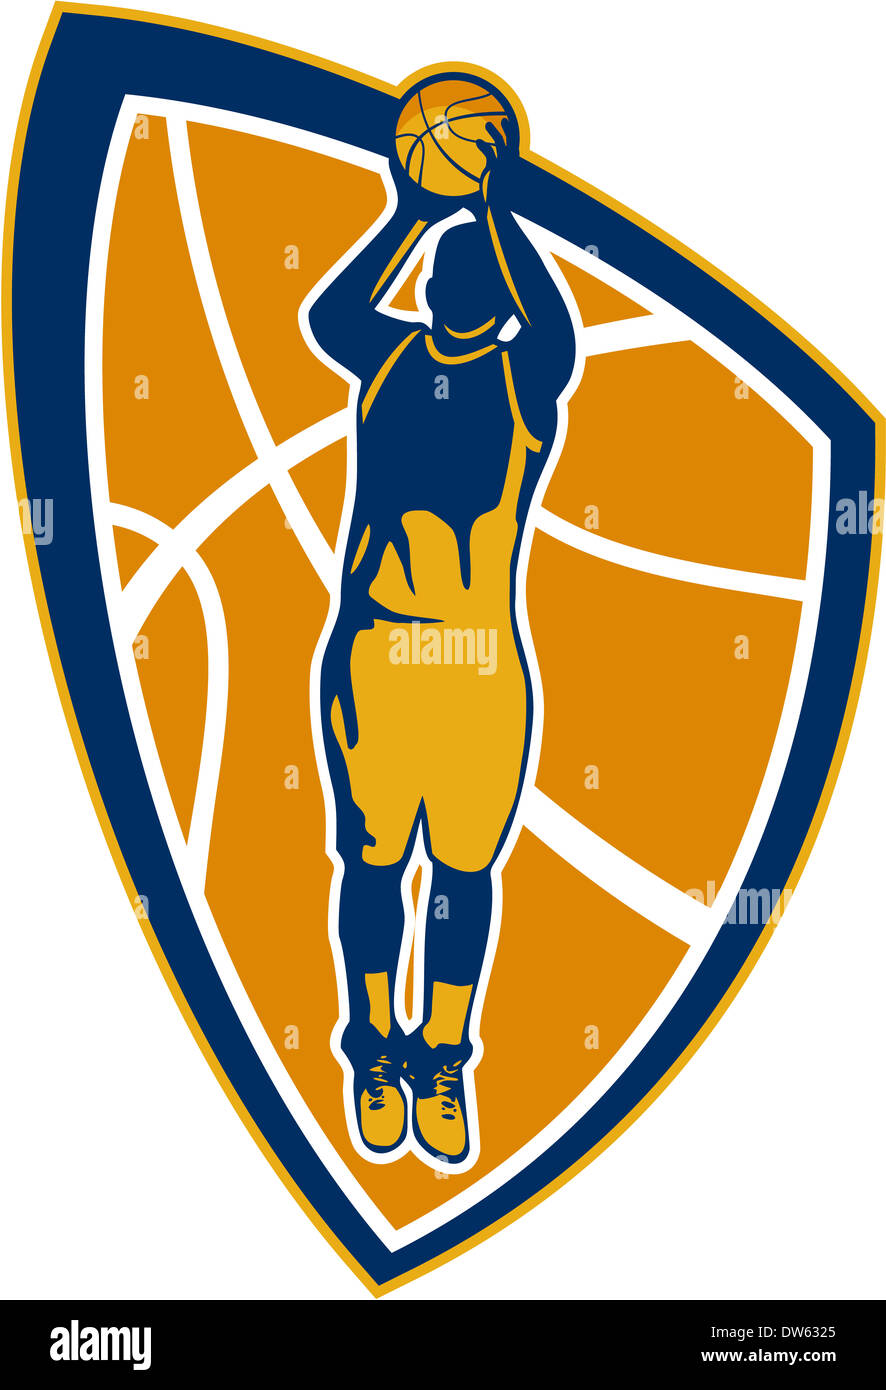 Illustration der Basketball-Spieler Sprungwurf Jumper springen Satz innen Schild Wappen auf isolierten weißen Hintergrund schießen. Stockfoto